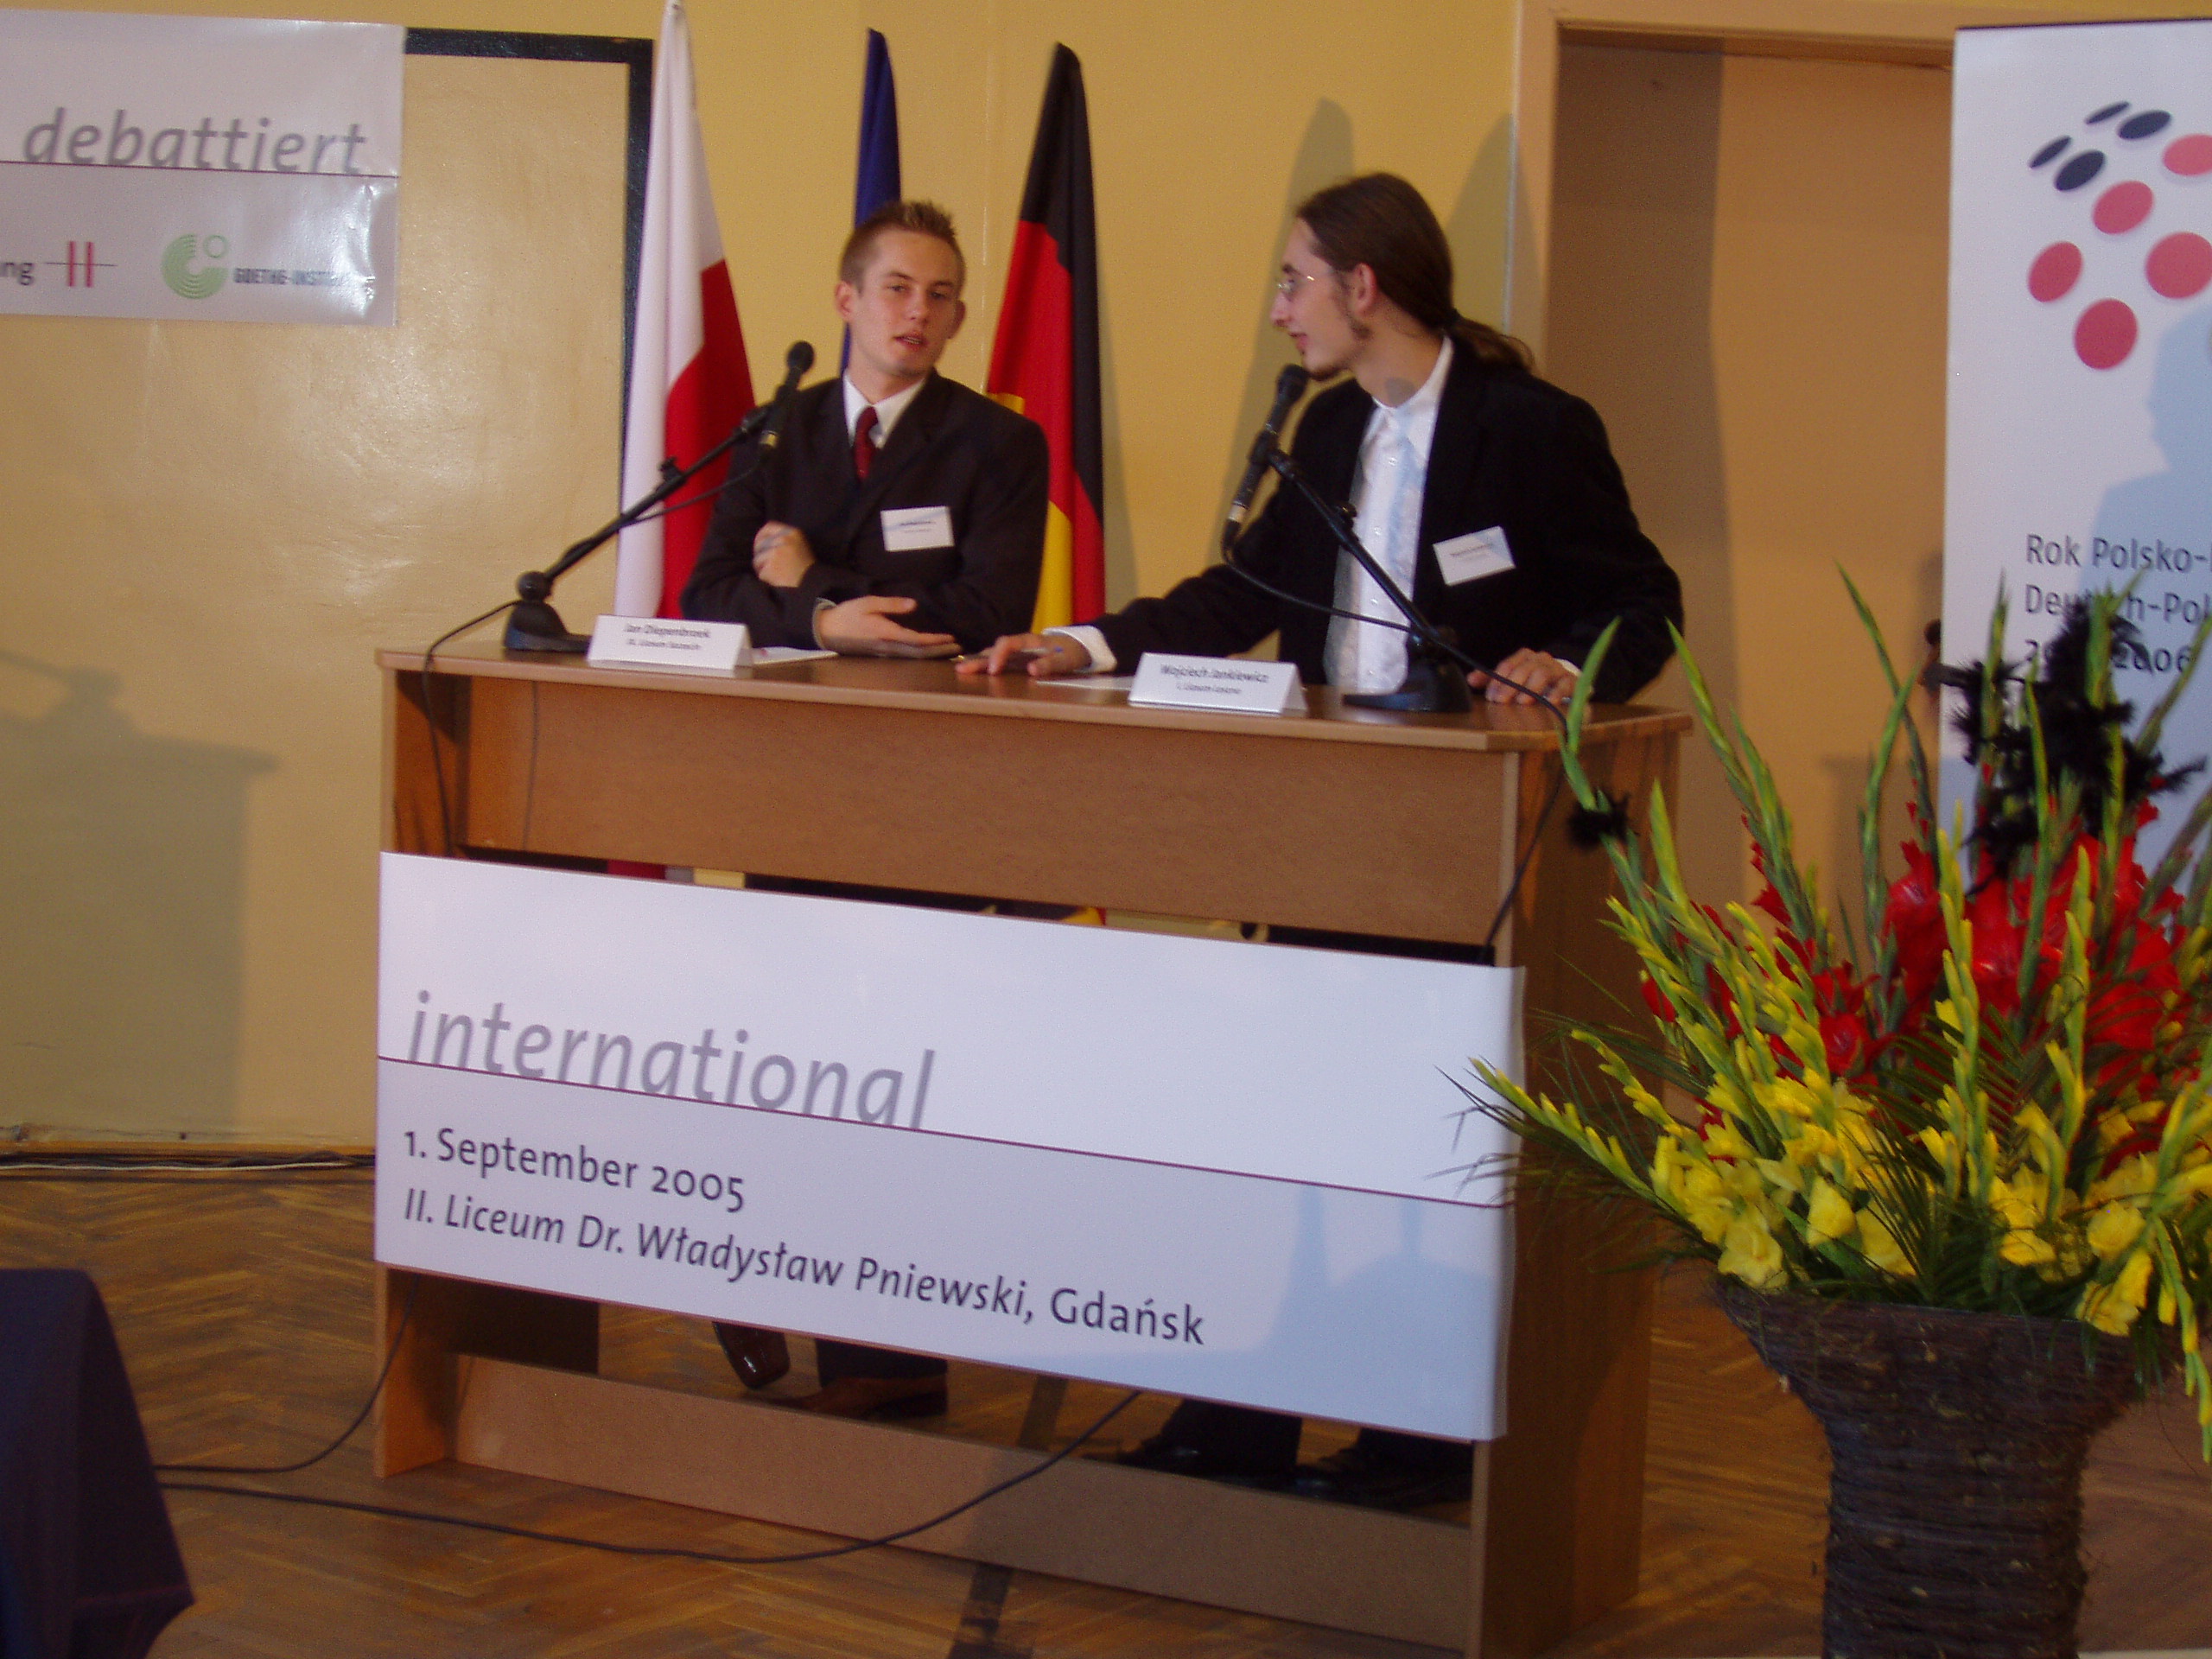 Jugend debattiert in Danzig 2005